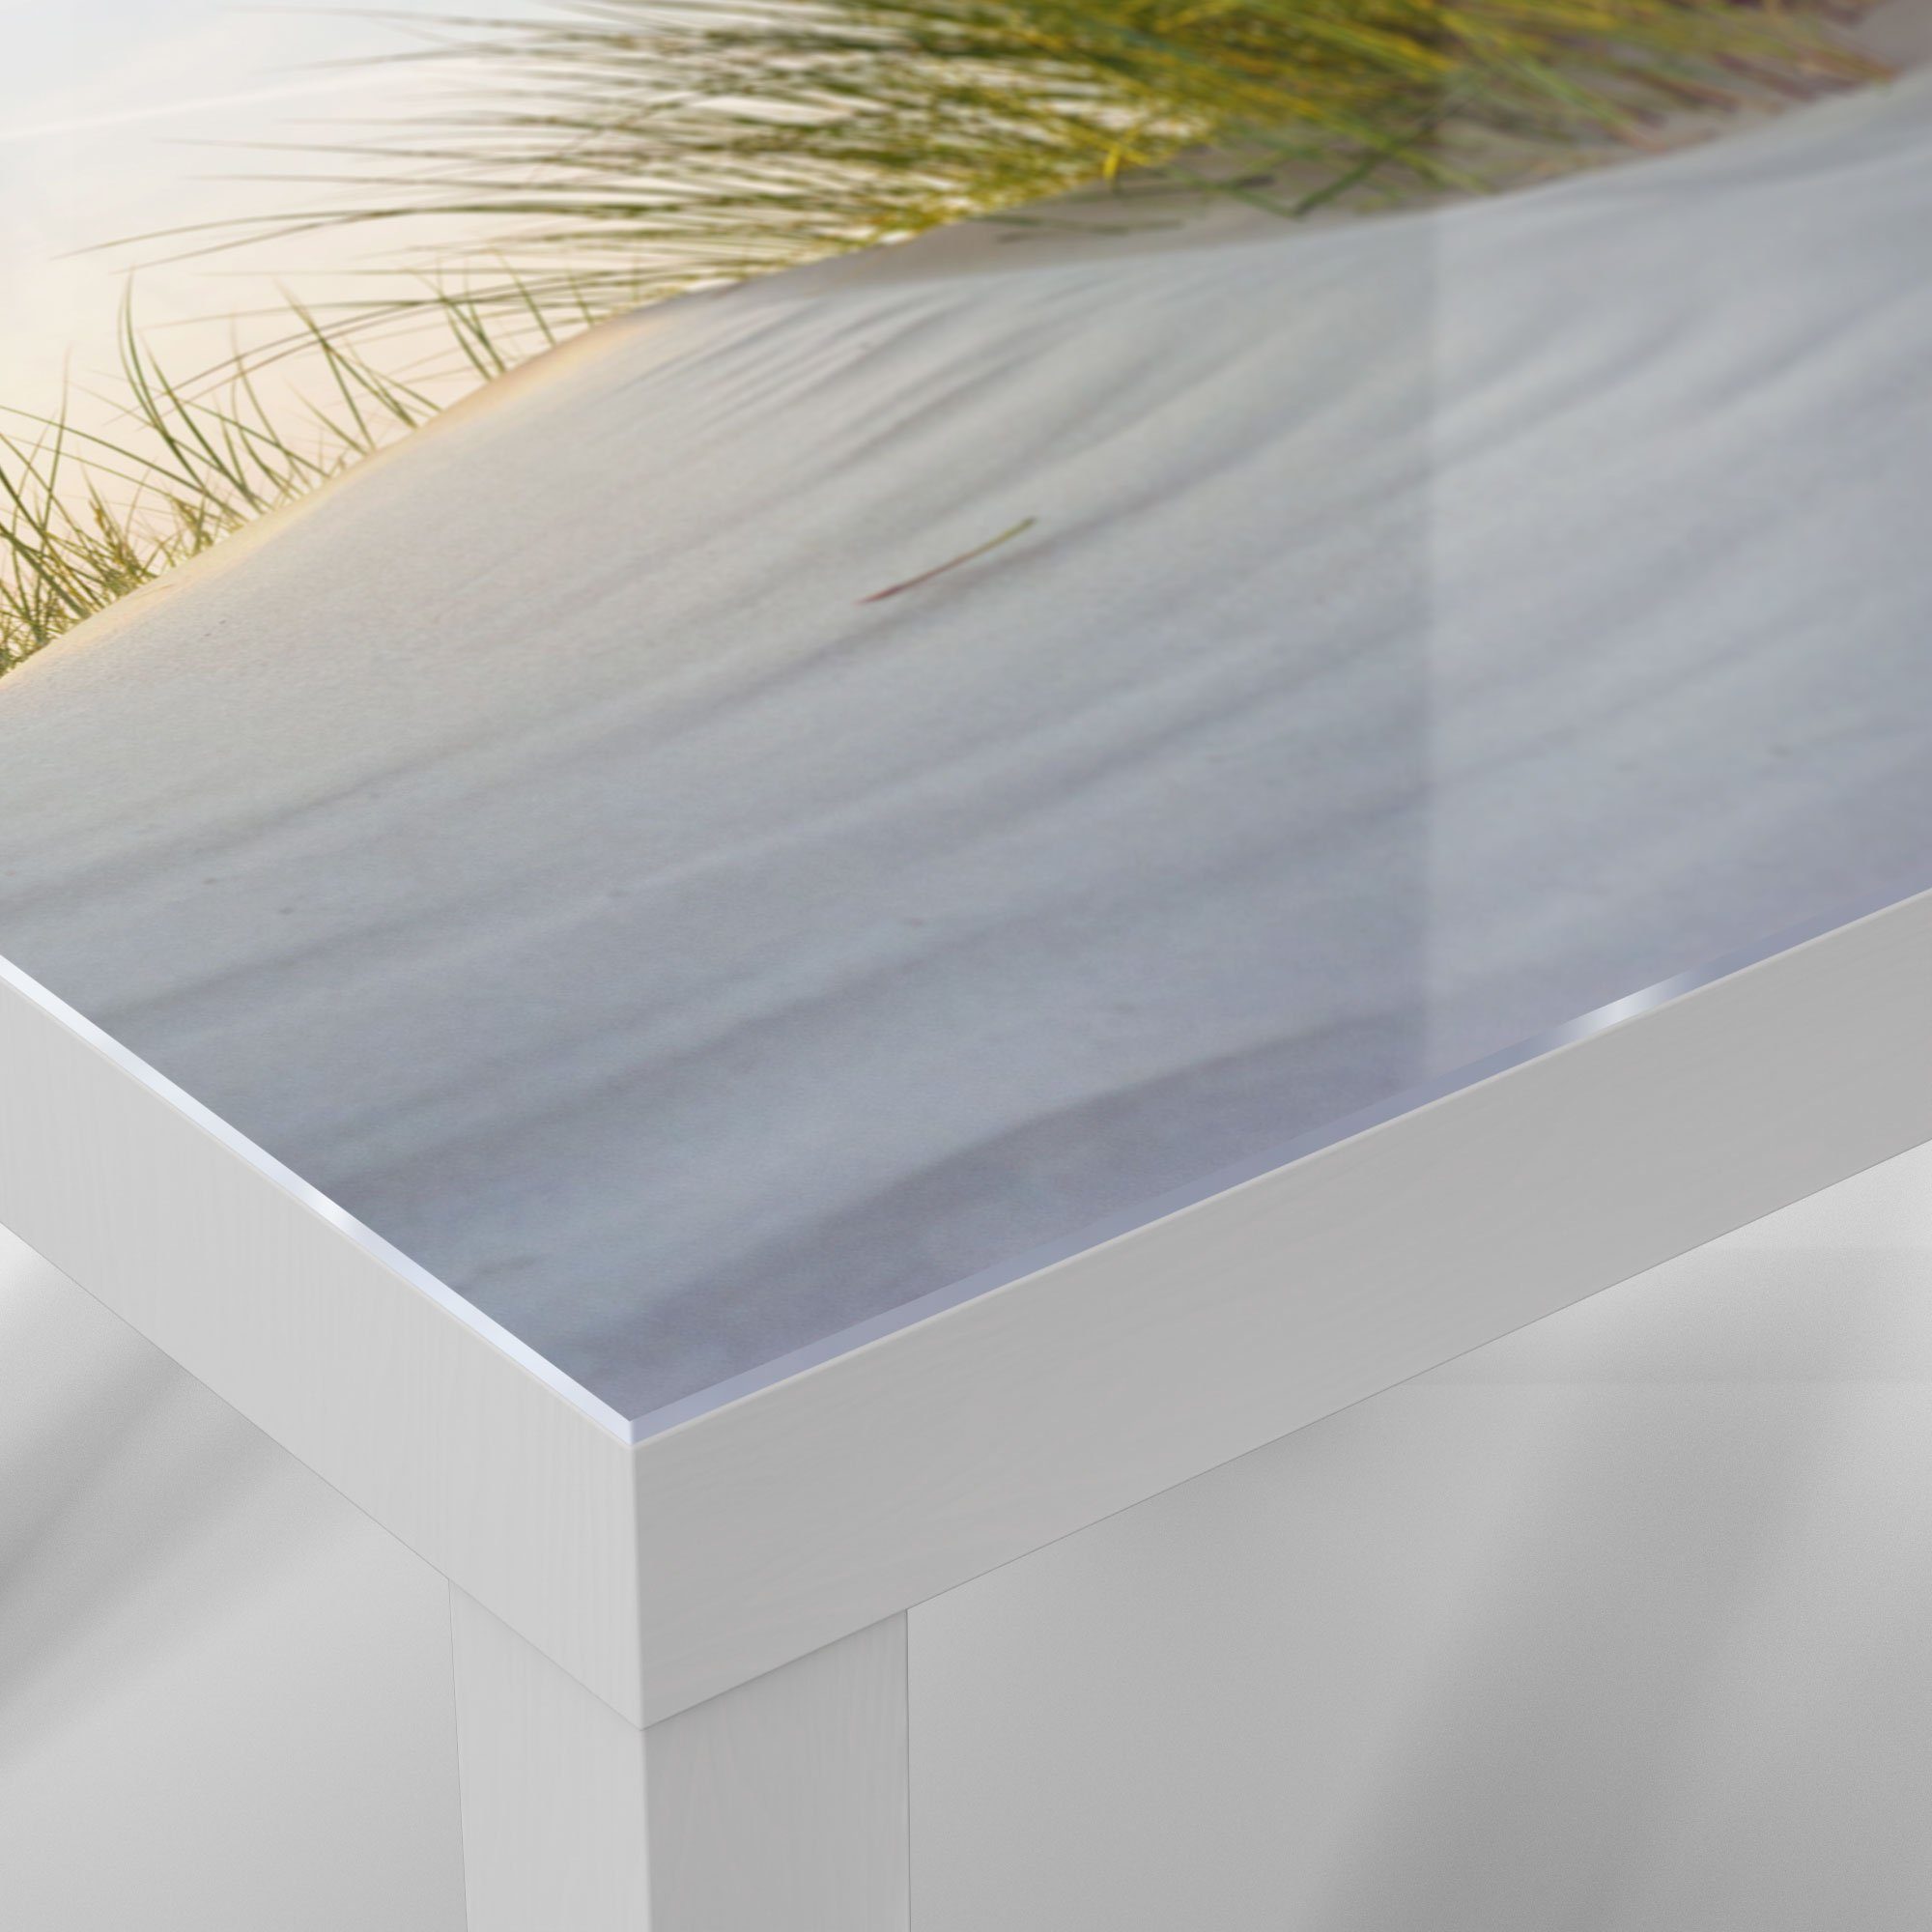 DEQORI Beistelltisch 'Düne modern Glas Weiß Couchtisch mit Dünengras', Glastisch